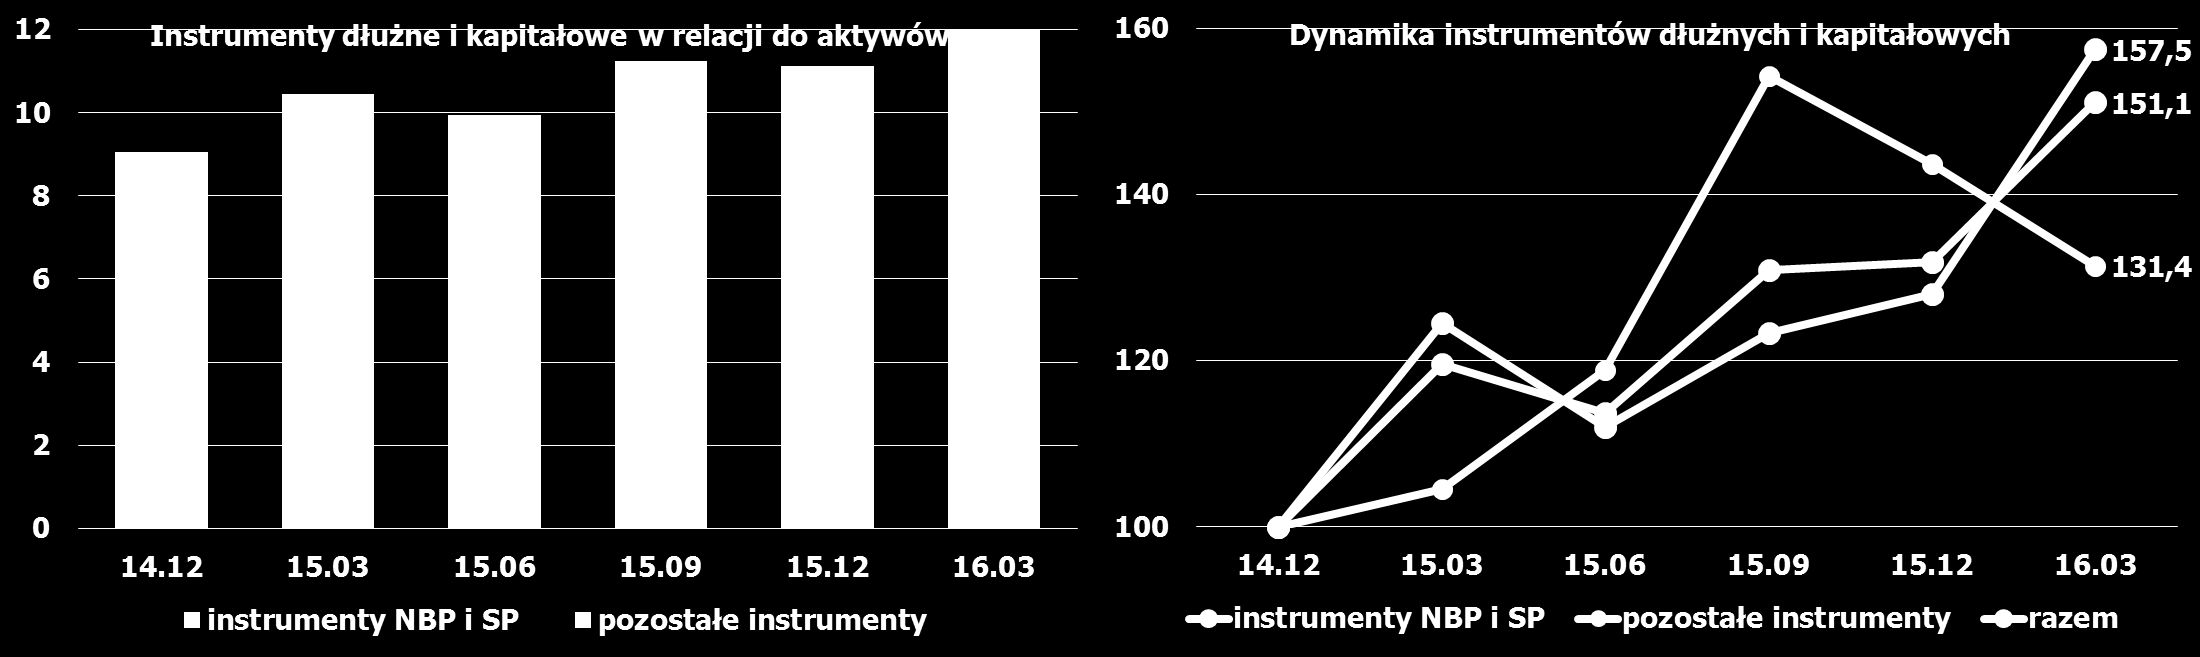 Instrumenty dłużne banków spółdzielczych i zrzeszających Banki zrzeszające dynamika (2014.